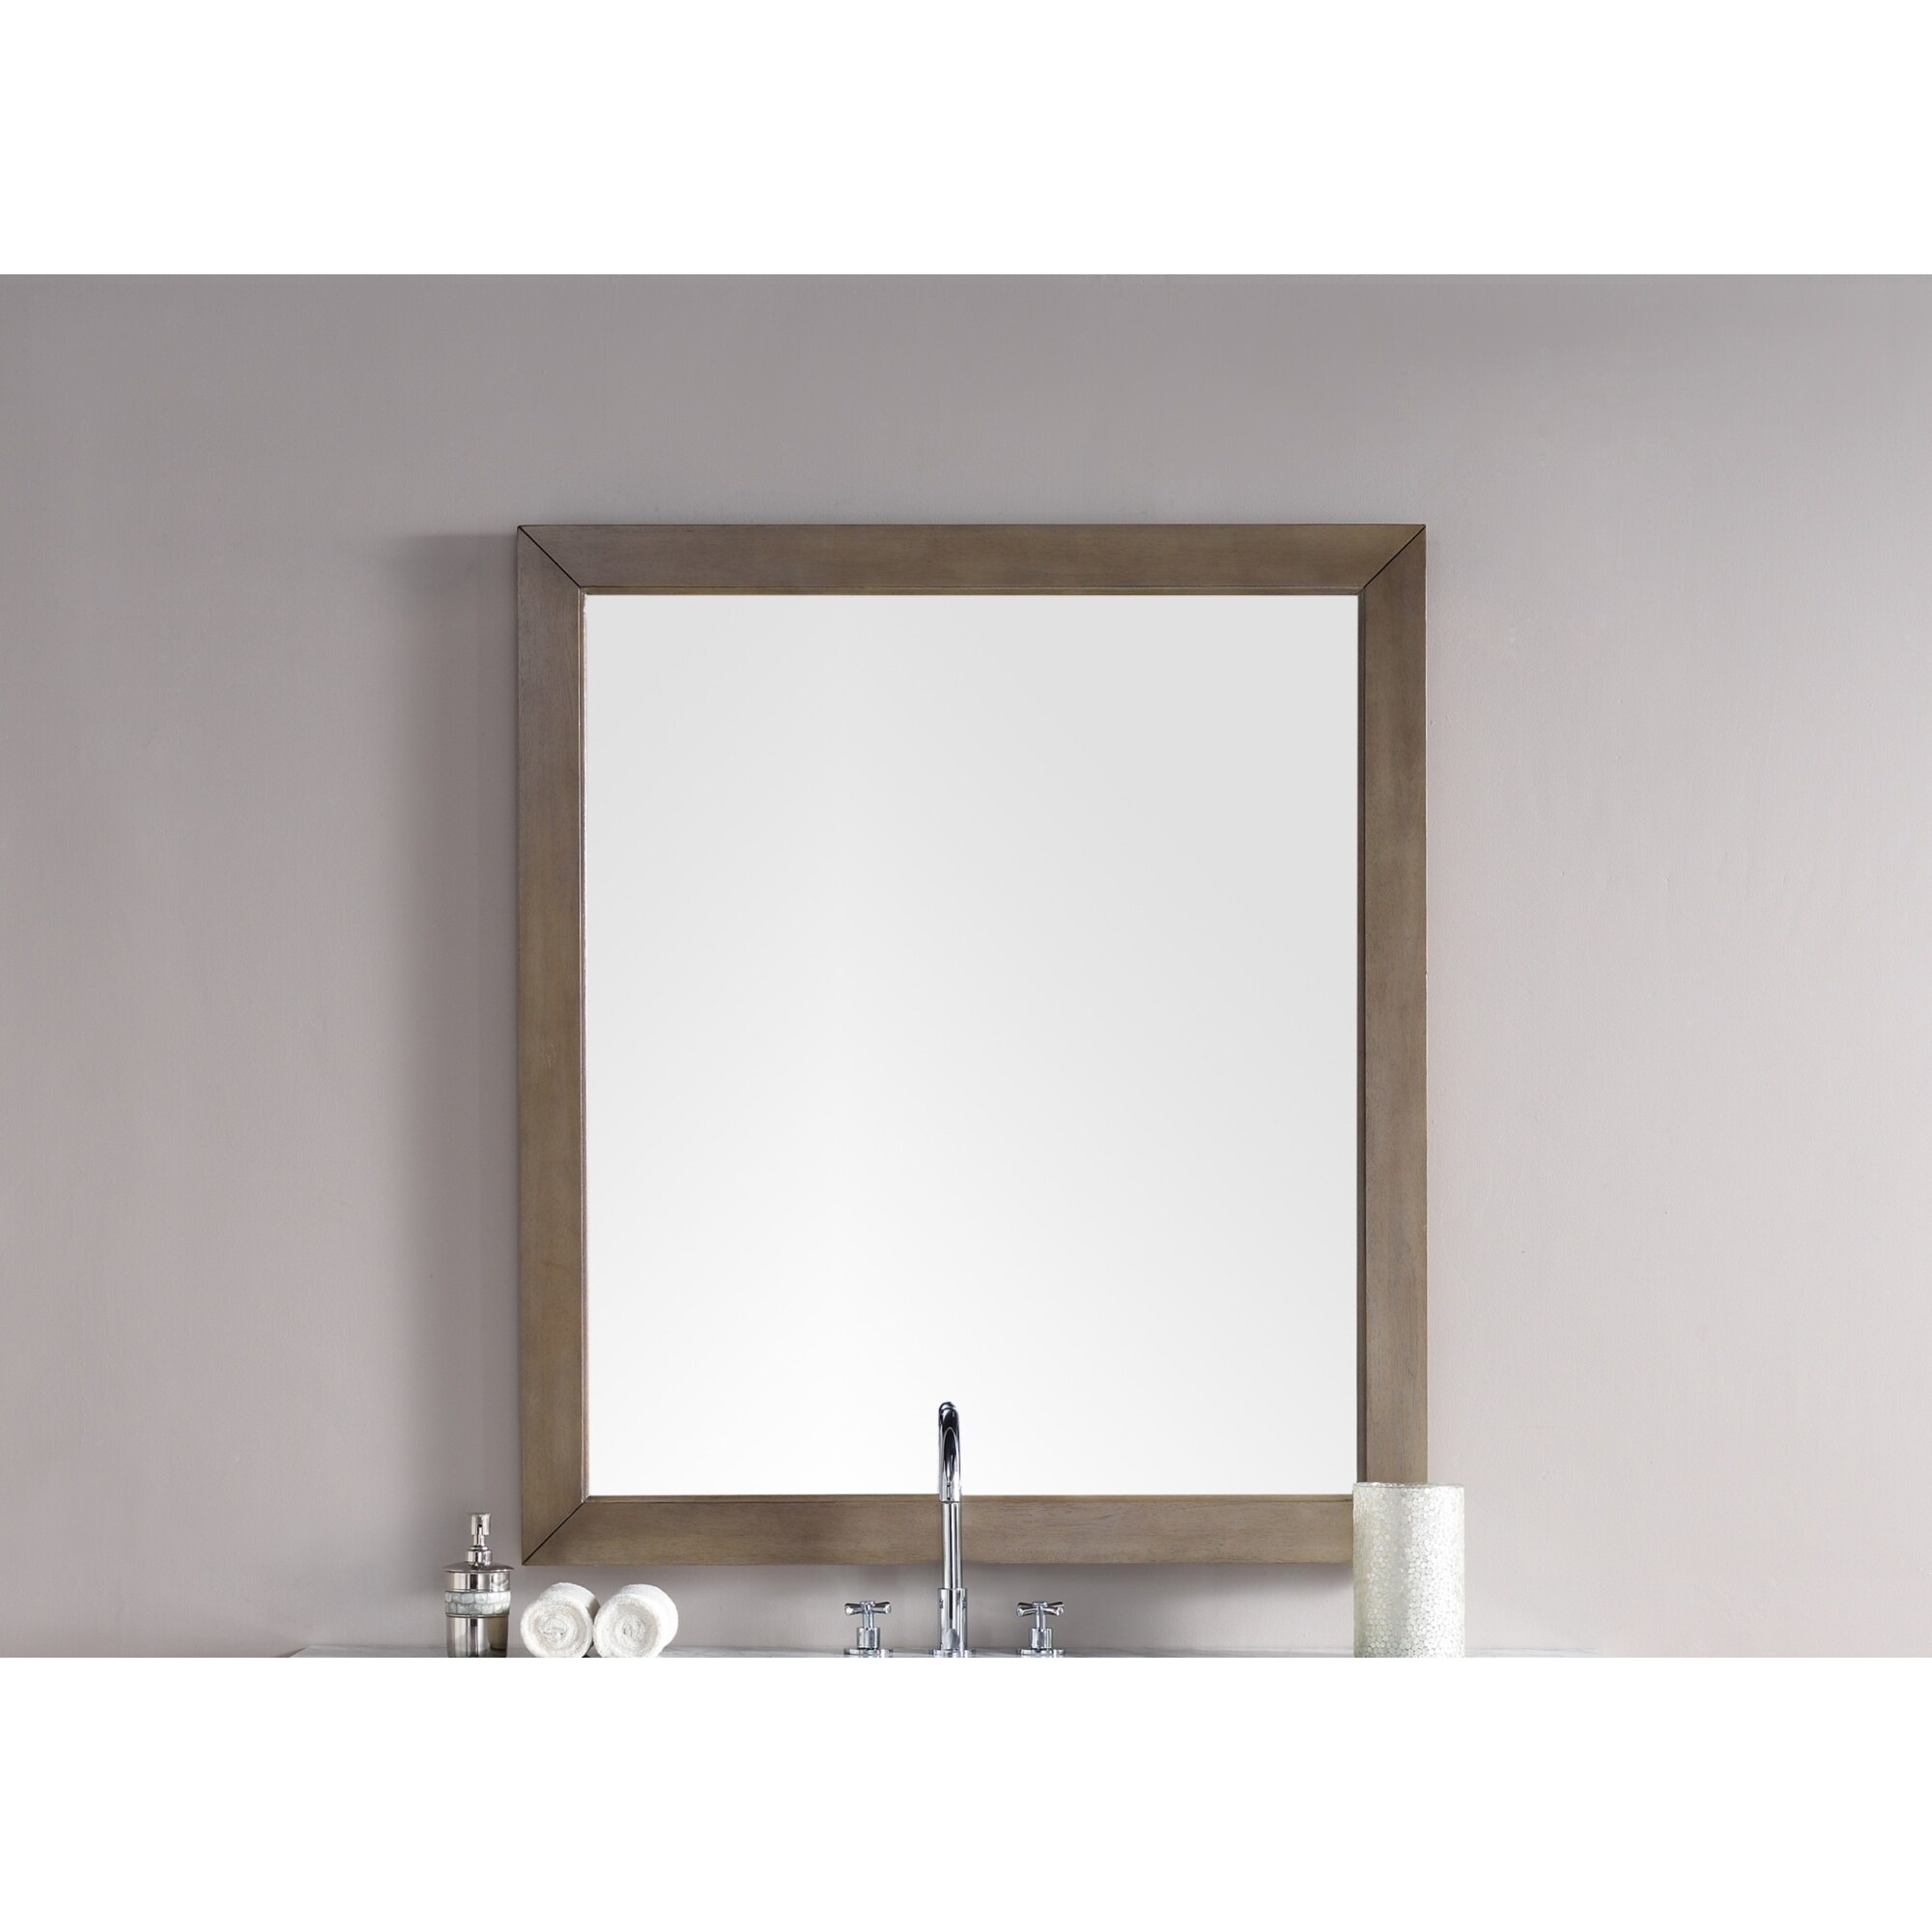 James Martin Vanities Chicago 42" x 48" Framed Bathroom Mirror - Whitewashed Walnut